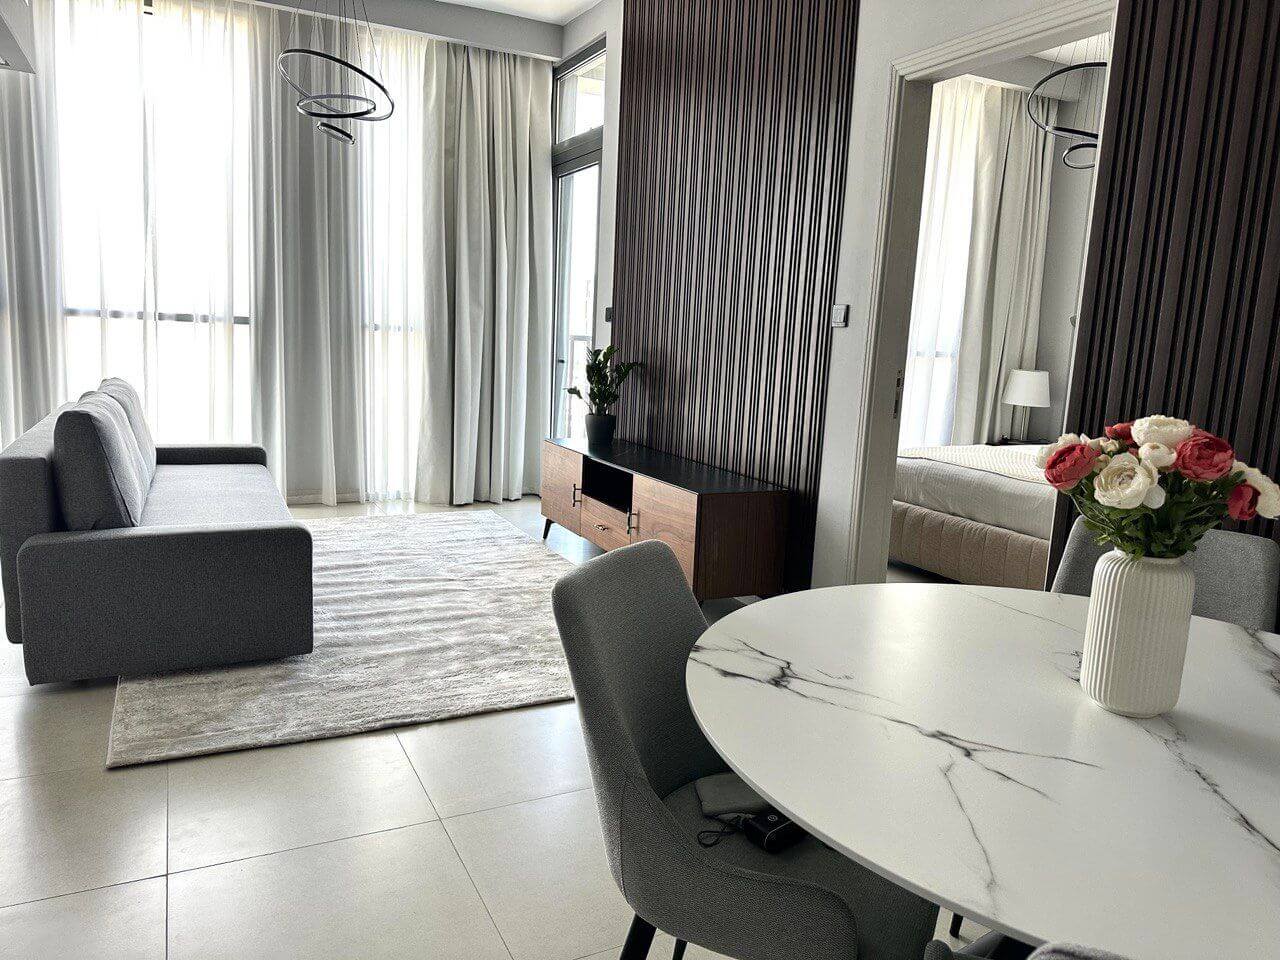 للبيع شقة رخيصة غرفة وصالة في دبي| For sale a Cheapest apartment